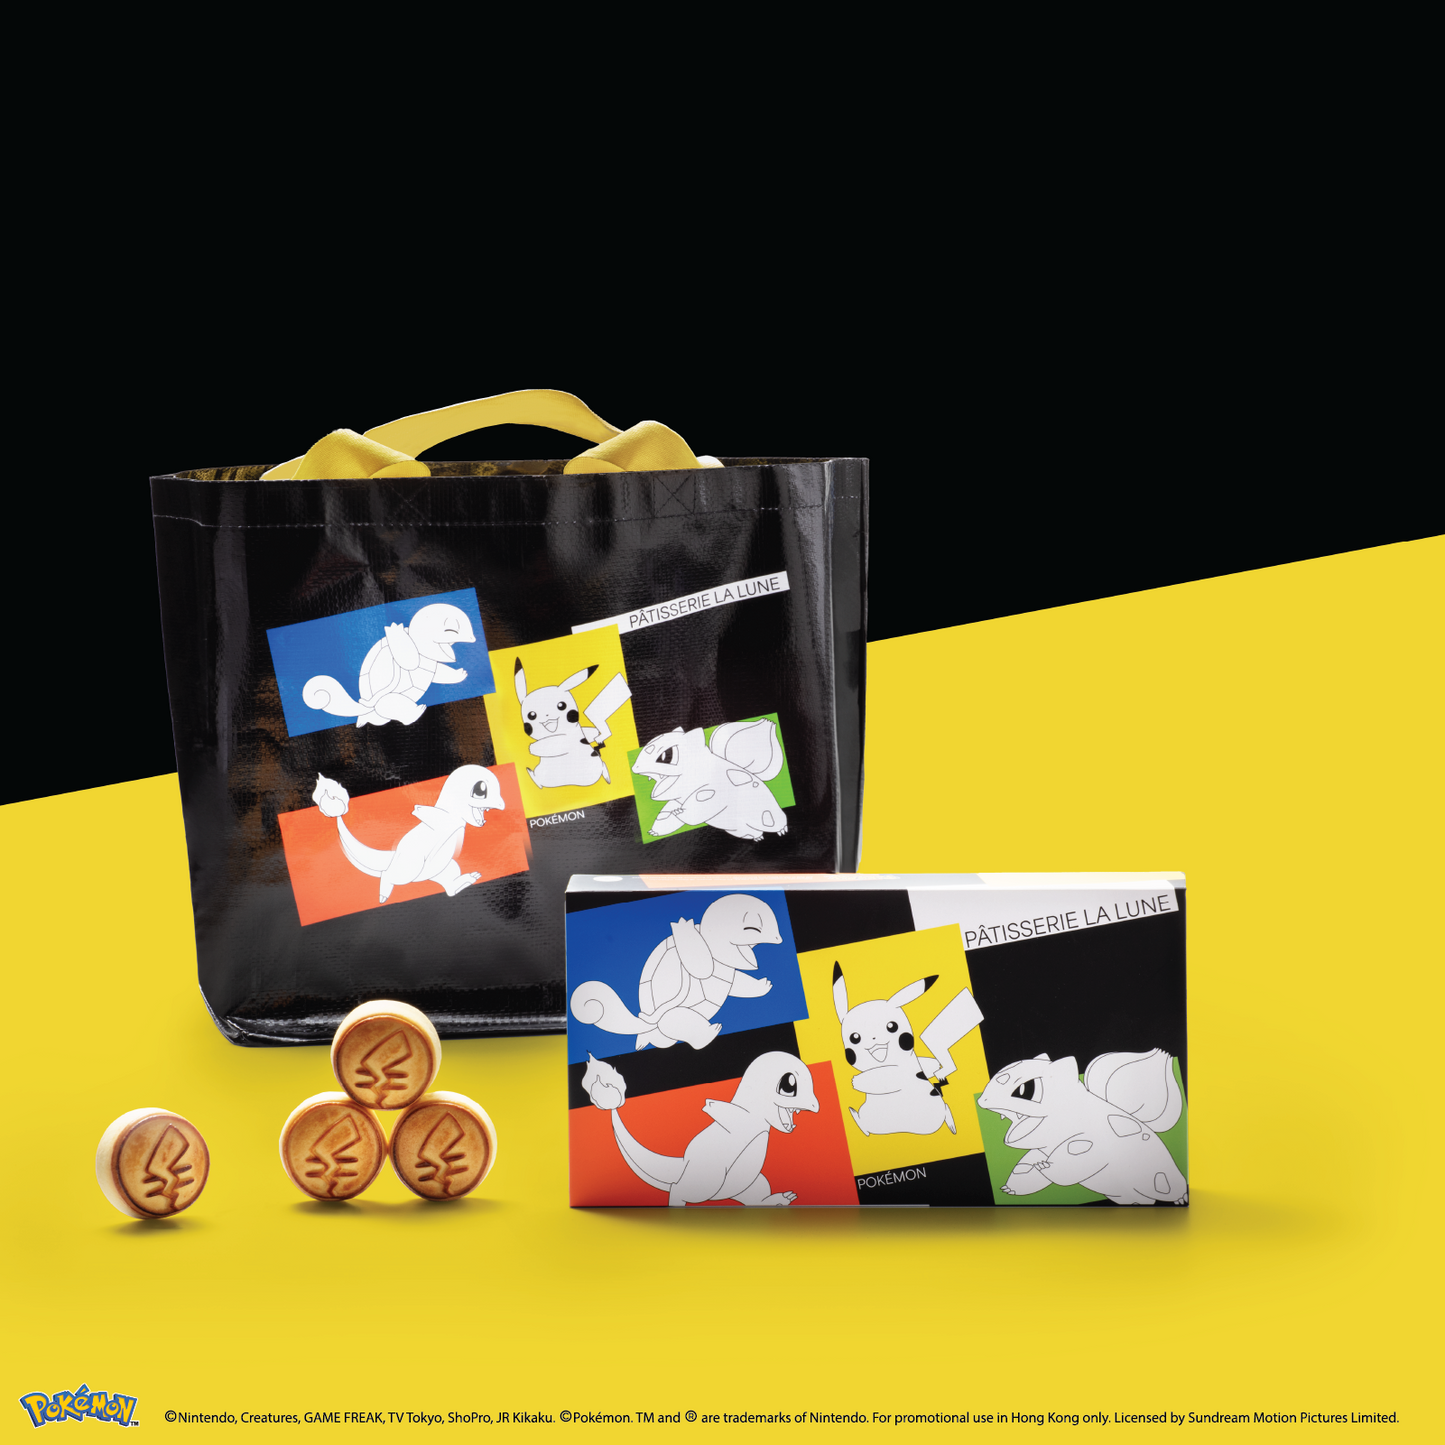 流心奶黃月餅 - Pokémon 特別版套裝 (8件禮盒裝)